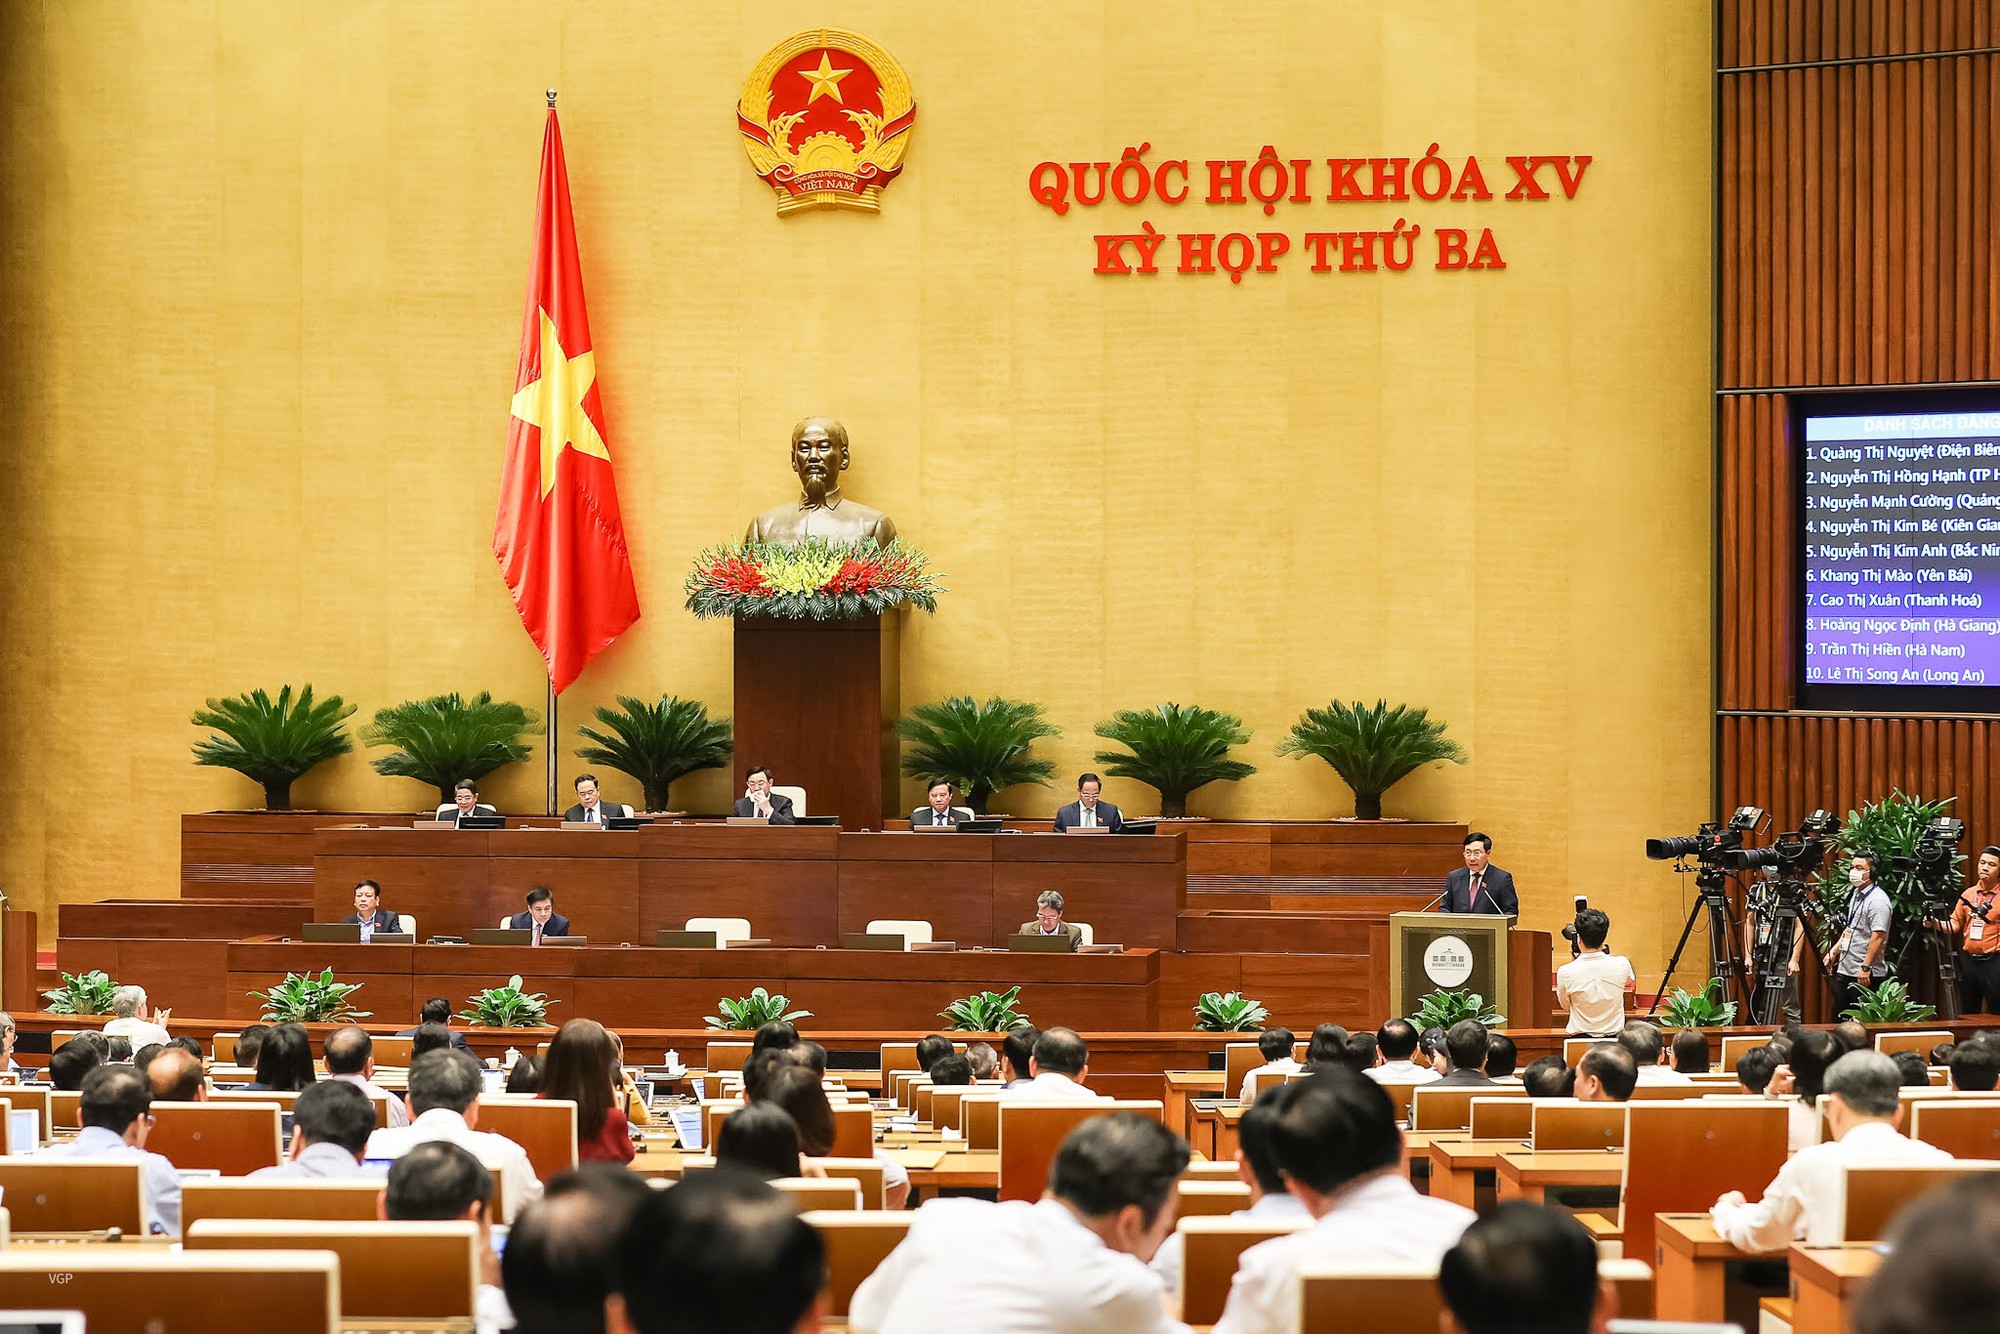 Phó Thủ tướng Thường trực báo cáo giải trình một số vấn đề cử tri quan tâm - Ảnh 3.